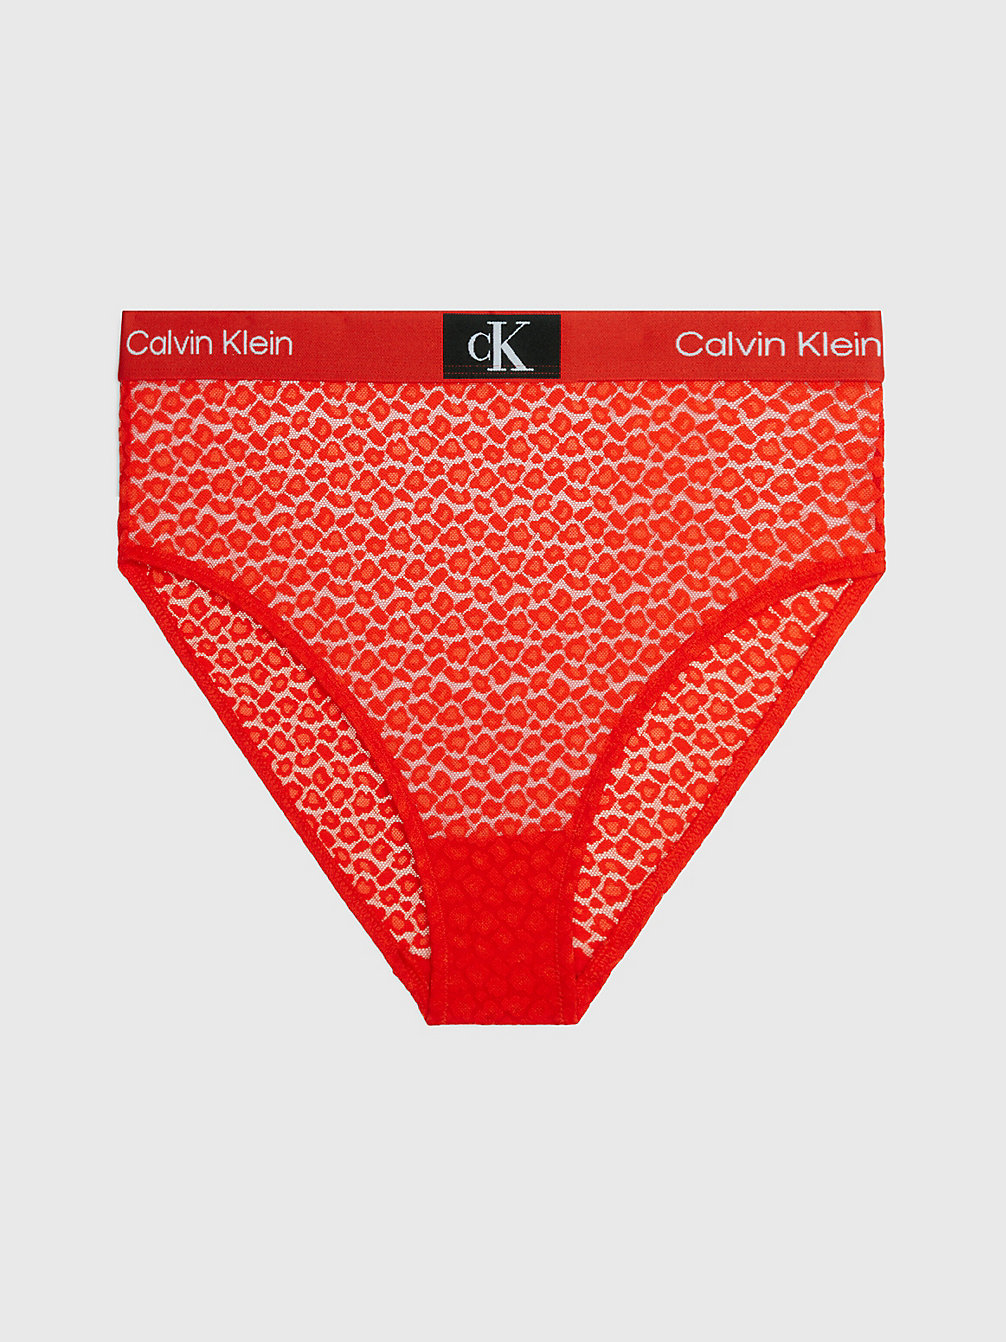 HAZARD Culotte Taille Haute En Dentelle - Ck96 undefined femmes Calvin Klein